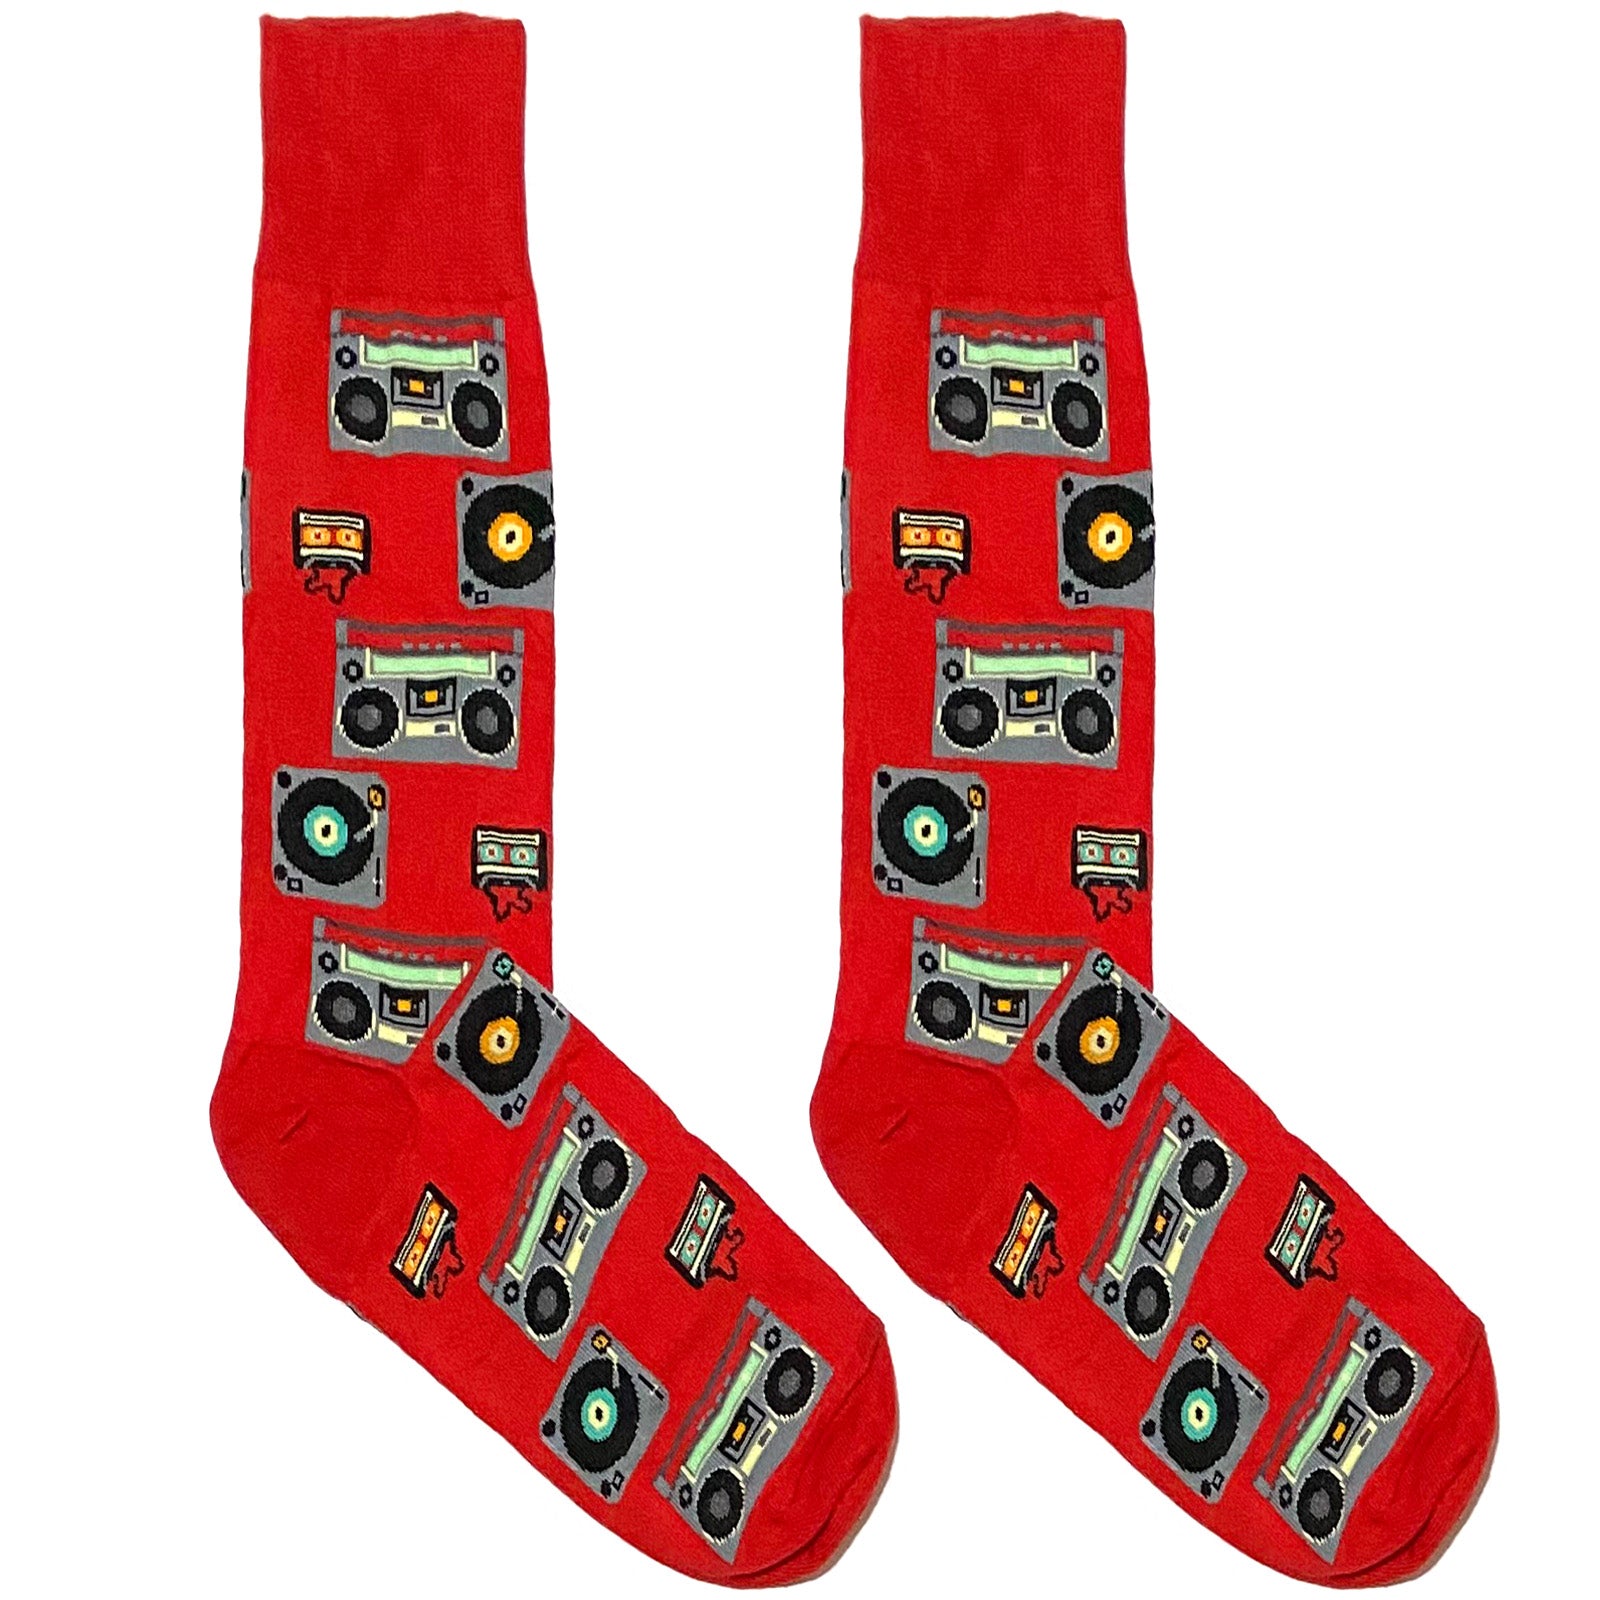 Red Sound System Socks